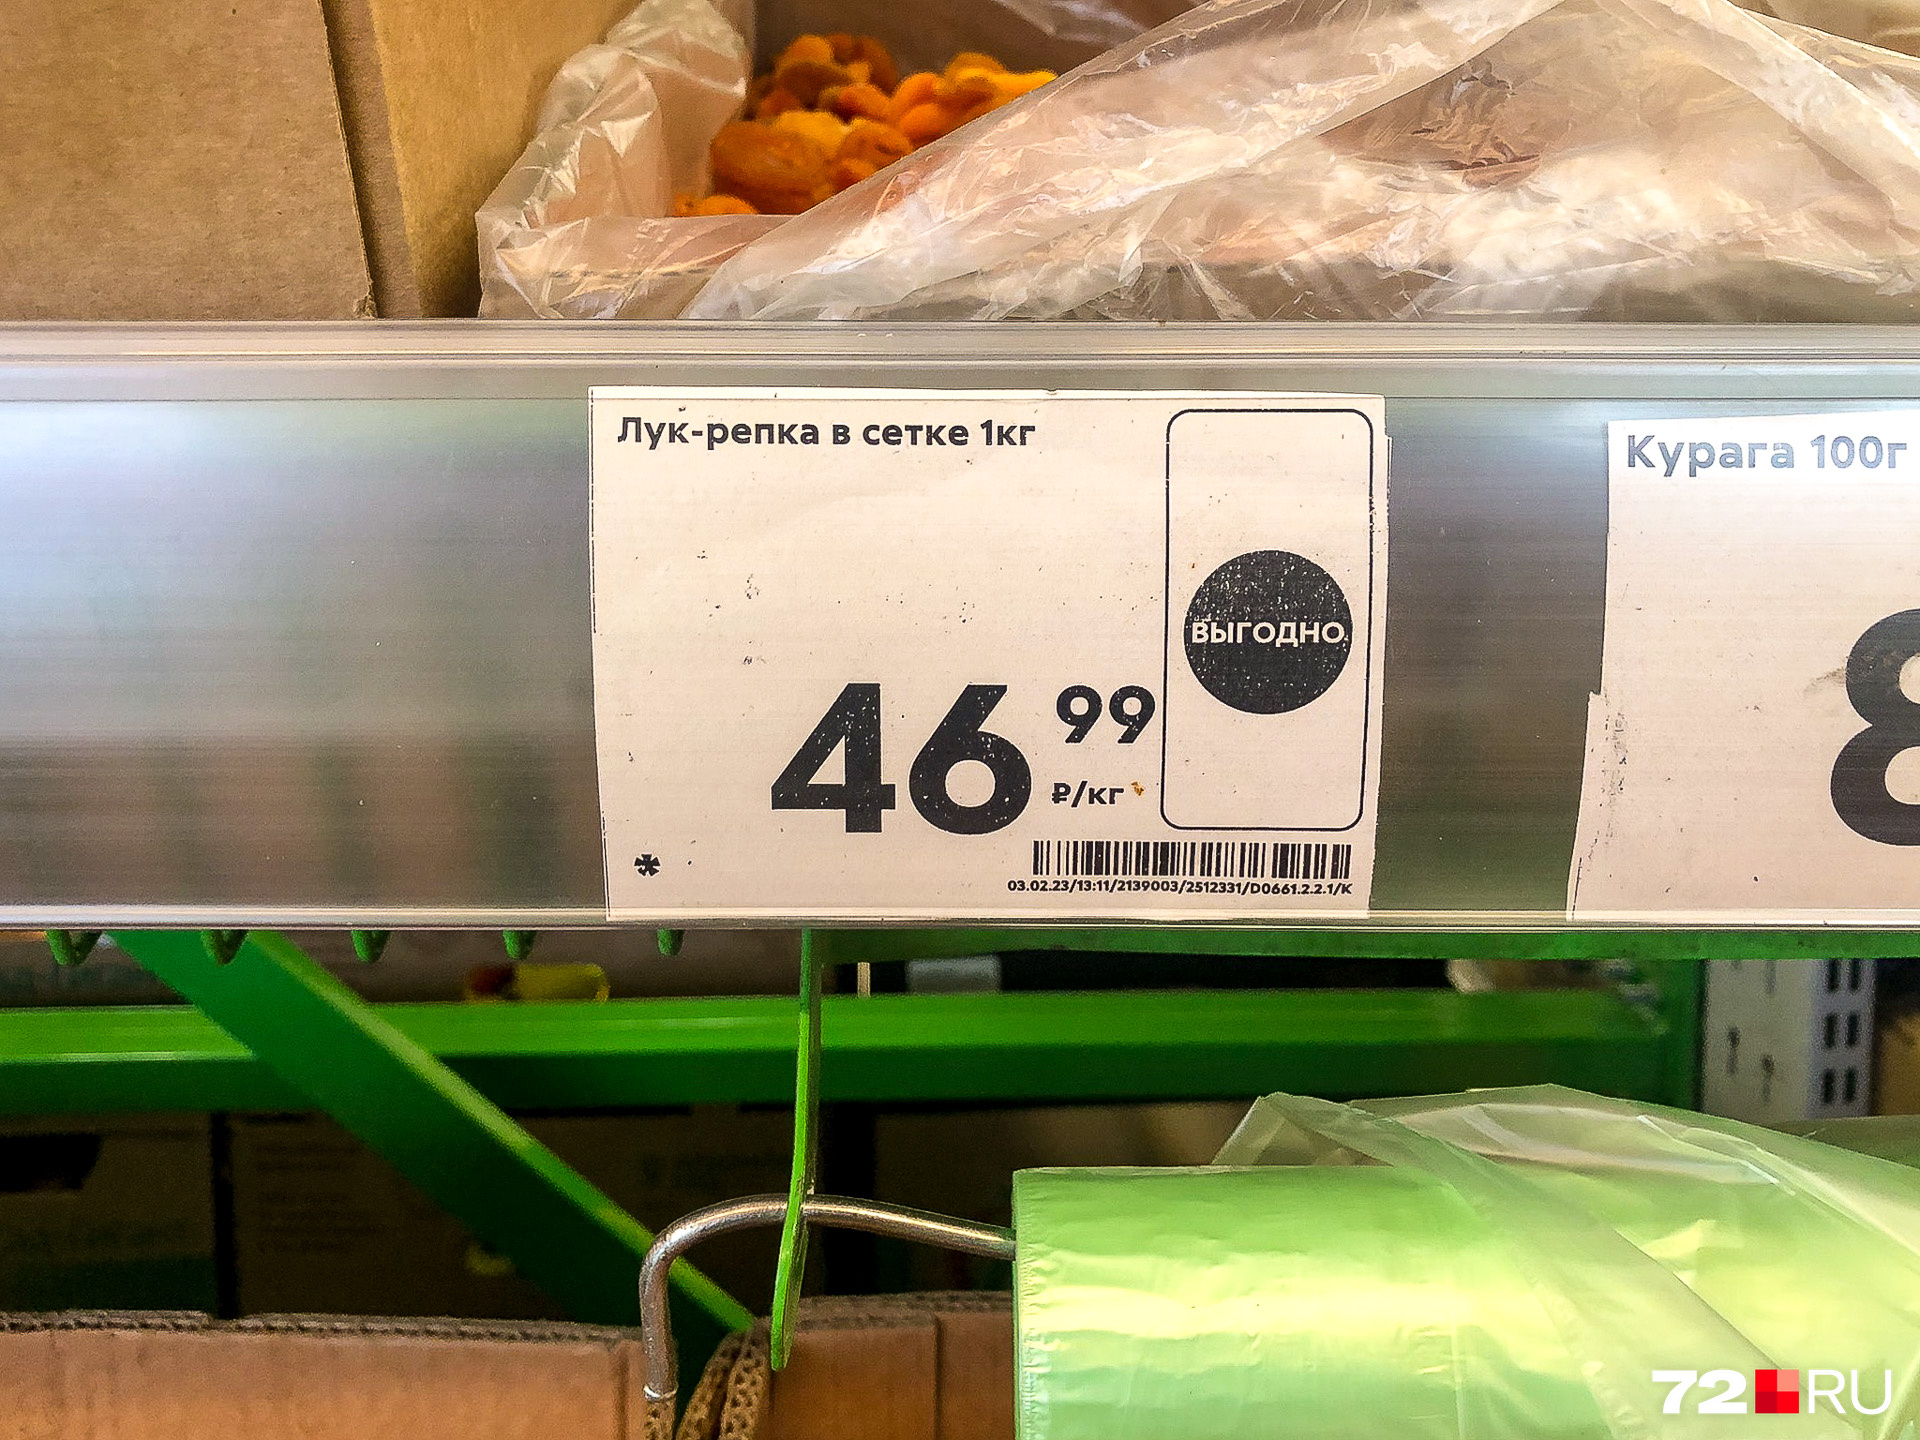 Не удастся сэкономить на покупке лука и в «Пятерочке»: за килограмм тут возьмут 46 рублей и 99 копеек